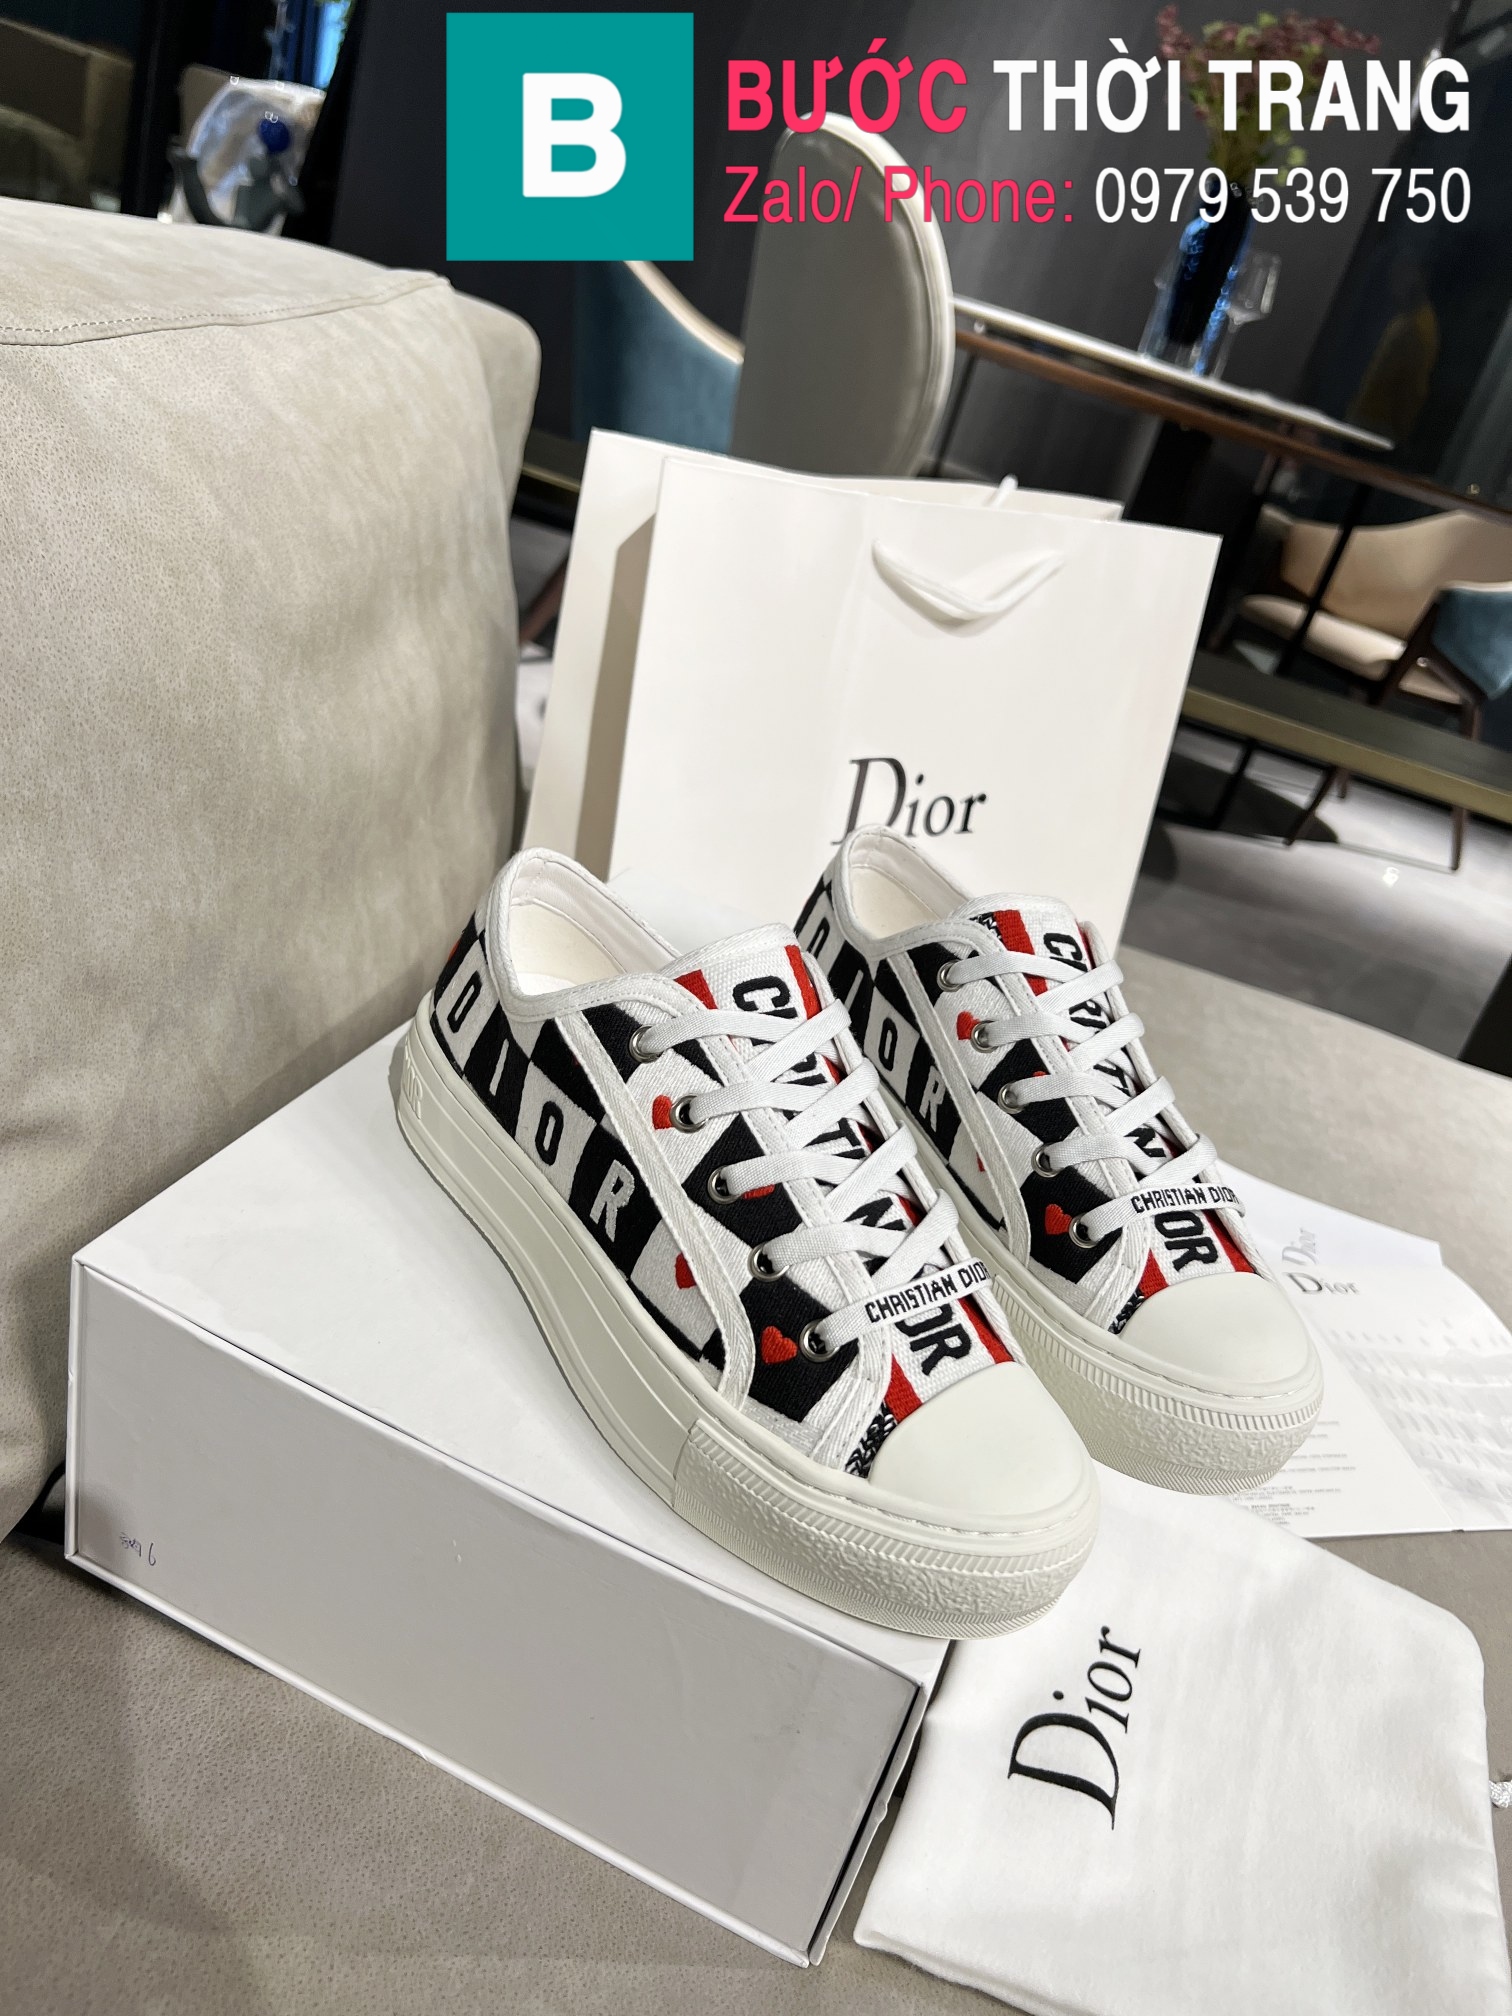 Những đôi giày Dior nữ mà bạn nên sở hữu  Tham khảo ngay